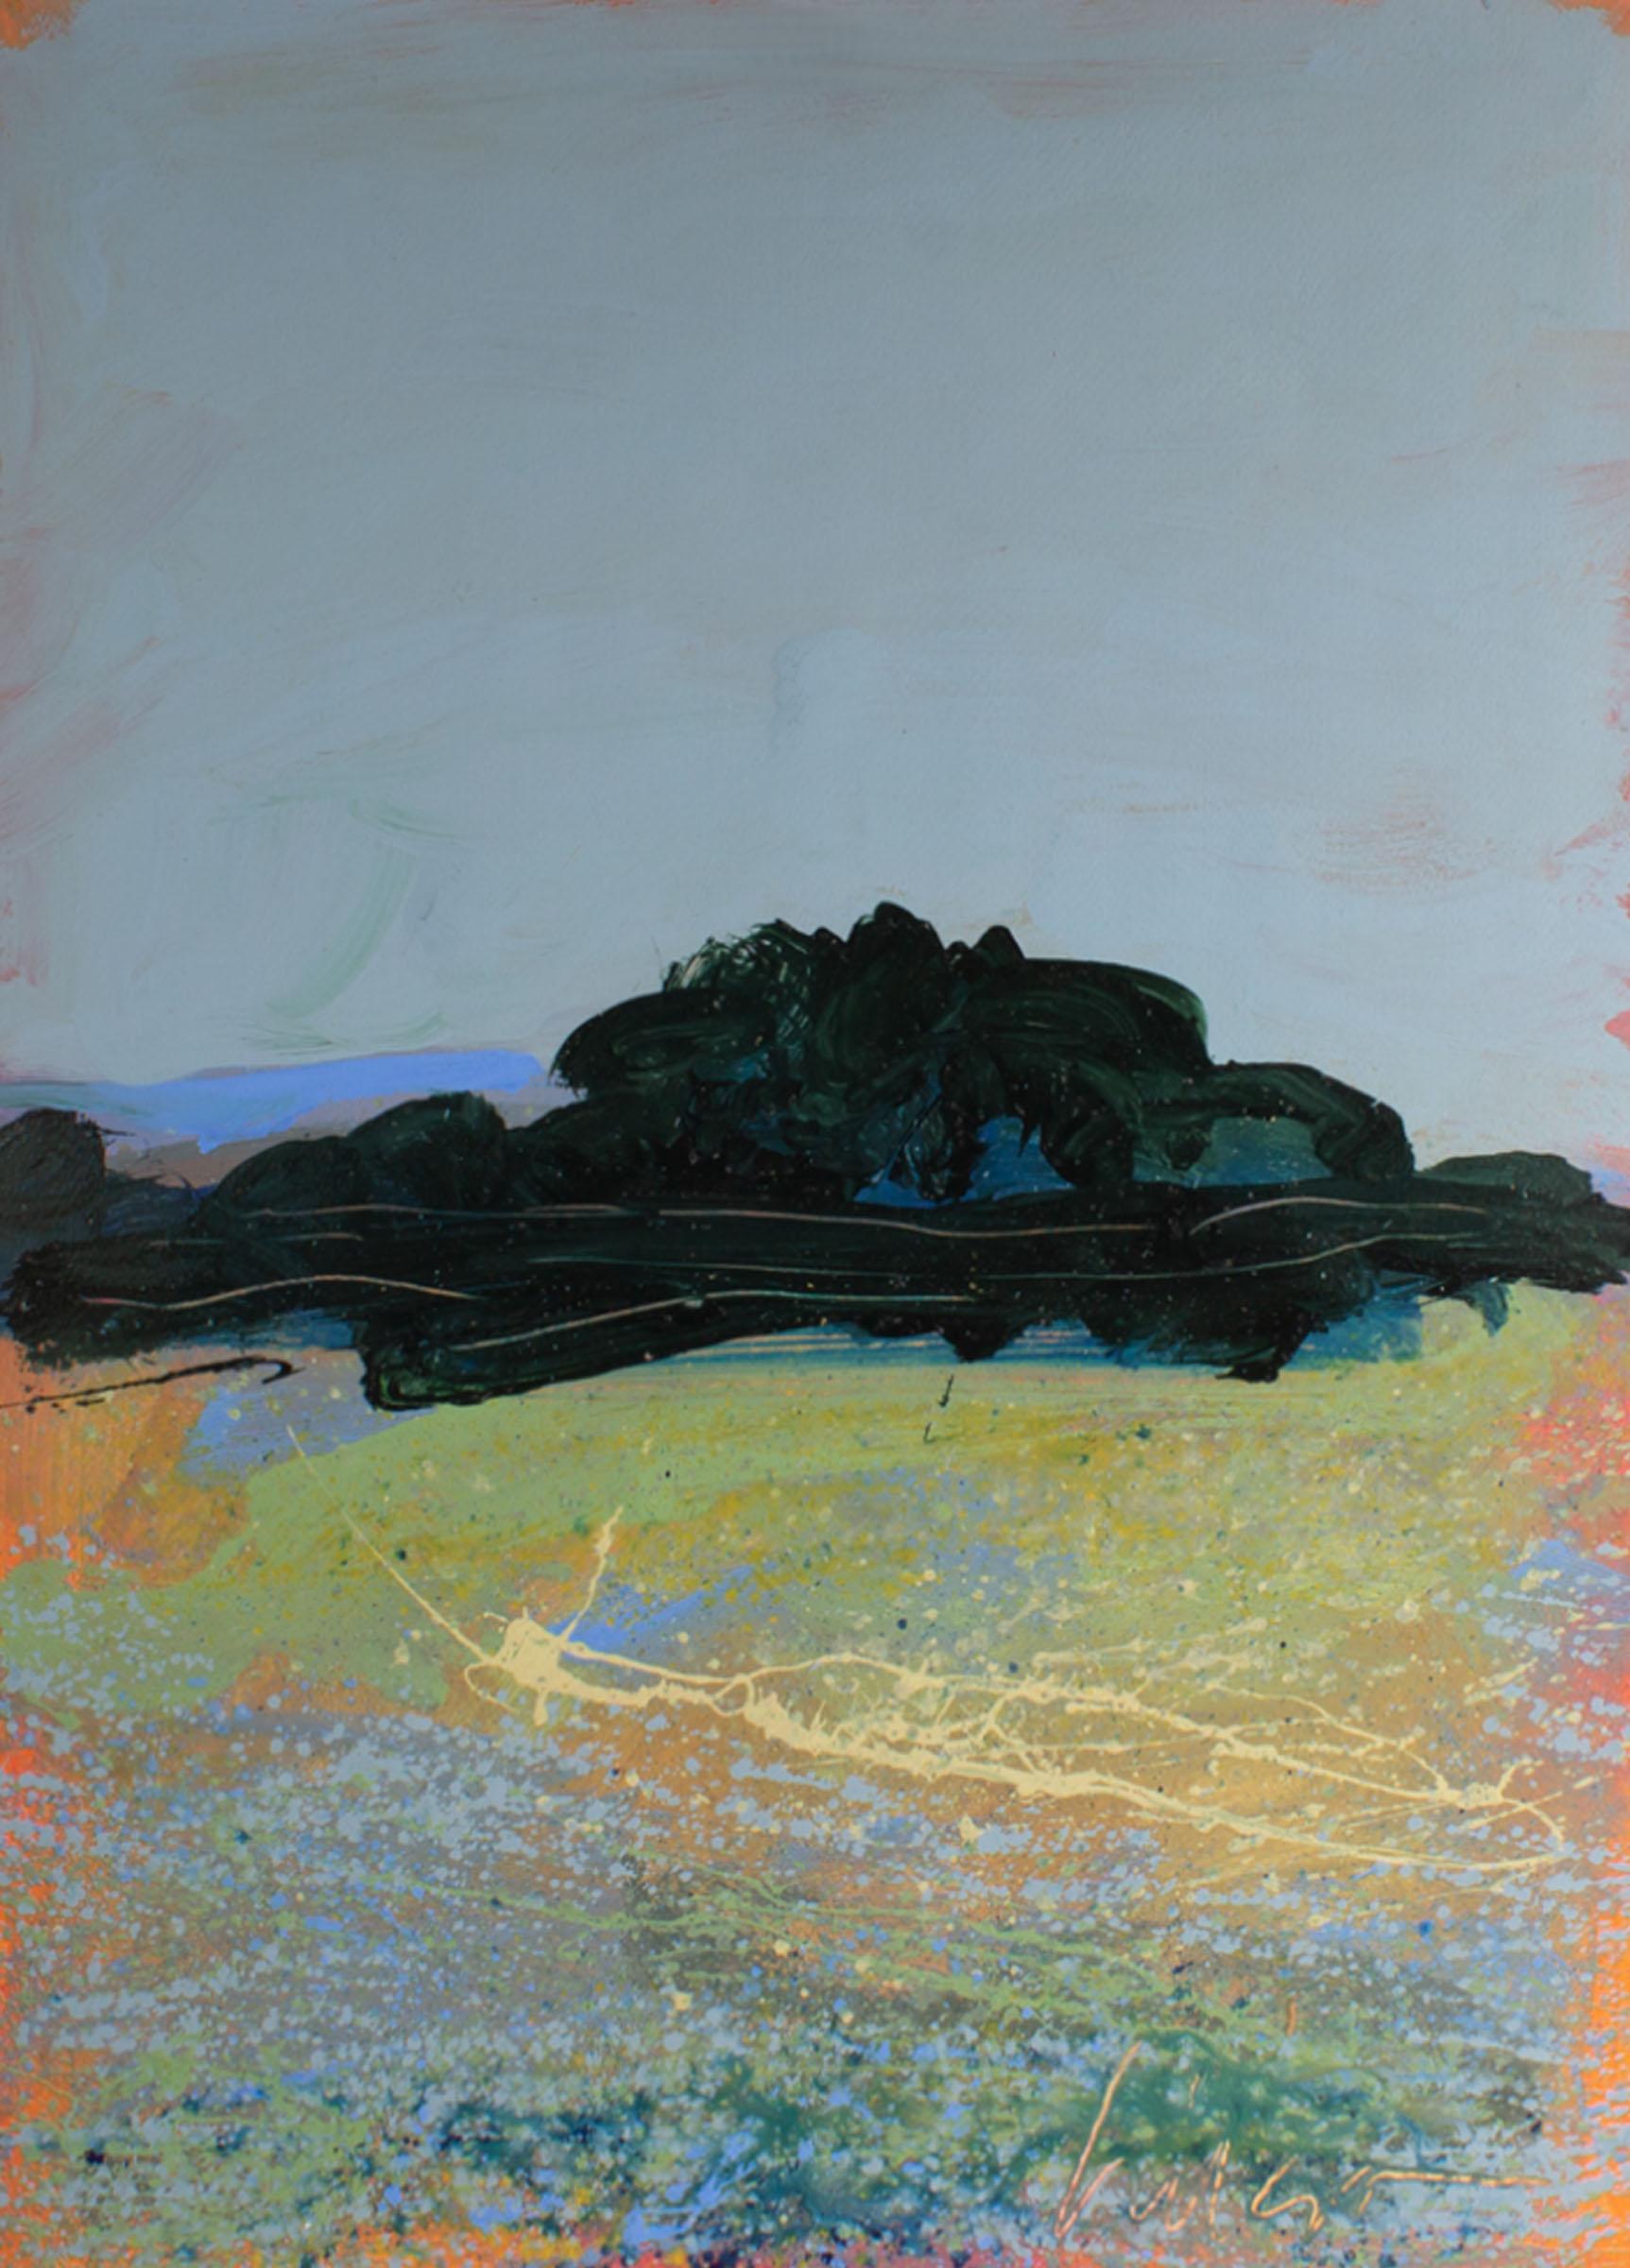 Ein abstraktes Landschaftsgemälde des amerikanischen Künstlers Harry Hilson (1935-2004) in Acryl auf Papier. Gestische Linien fügen sich zu einer lebendigen abstrakten Landschaft mit einem Berg und Bäumen im Hintergrund und einem Blumenfeld im